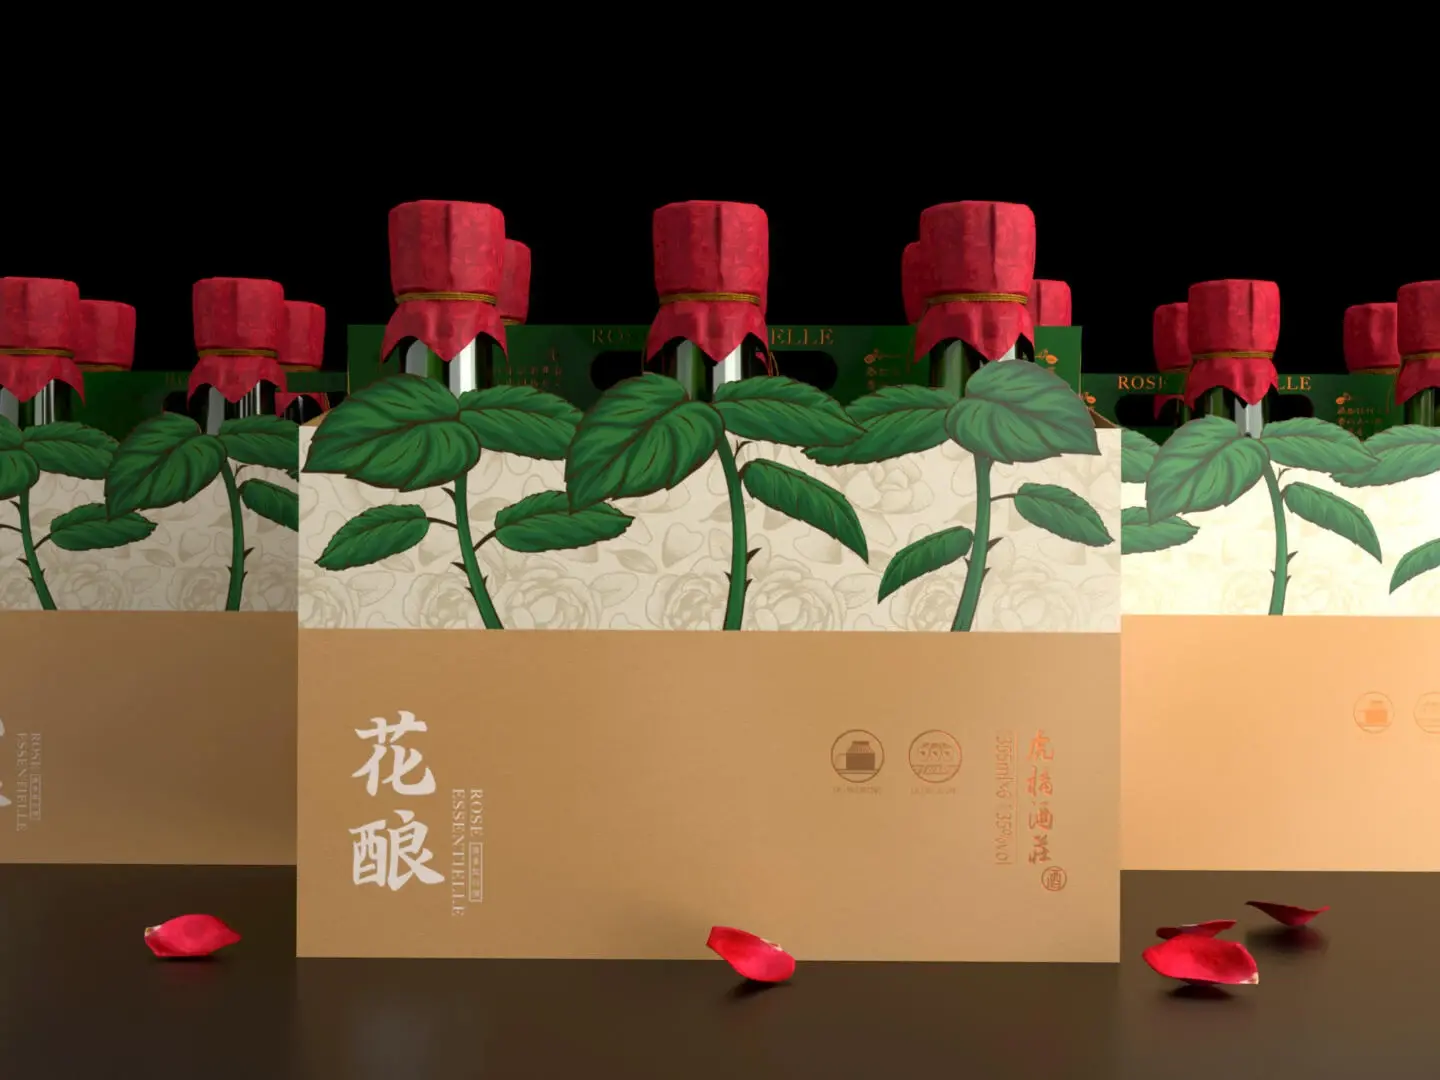 Blogduwebdesign packaging habillage bouteille original rose essentielle